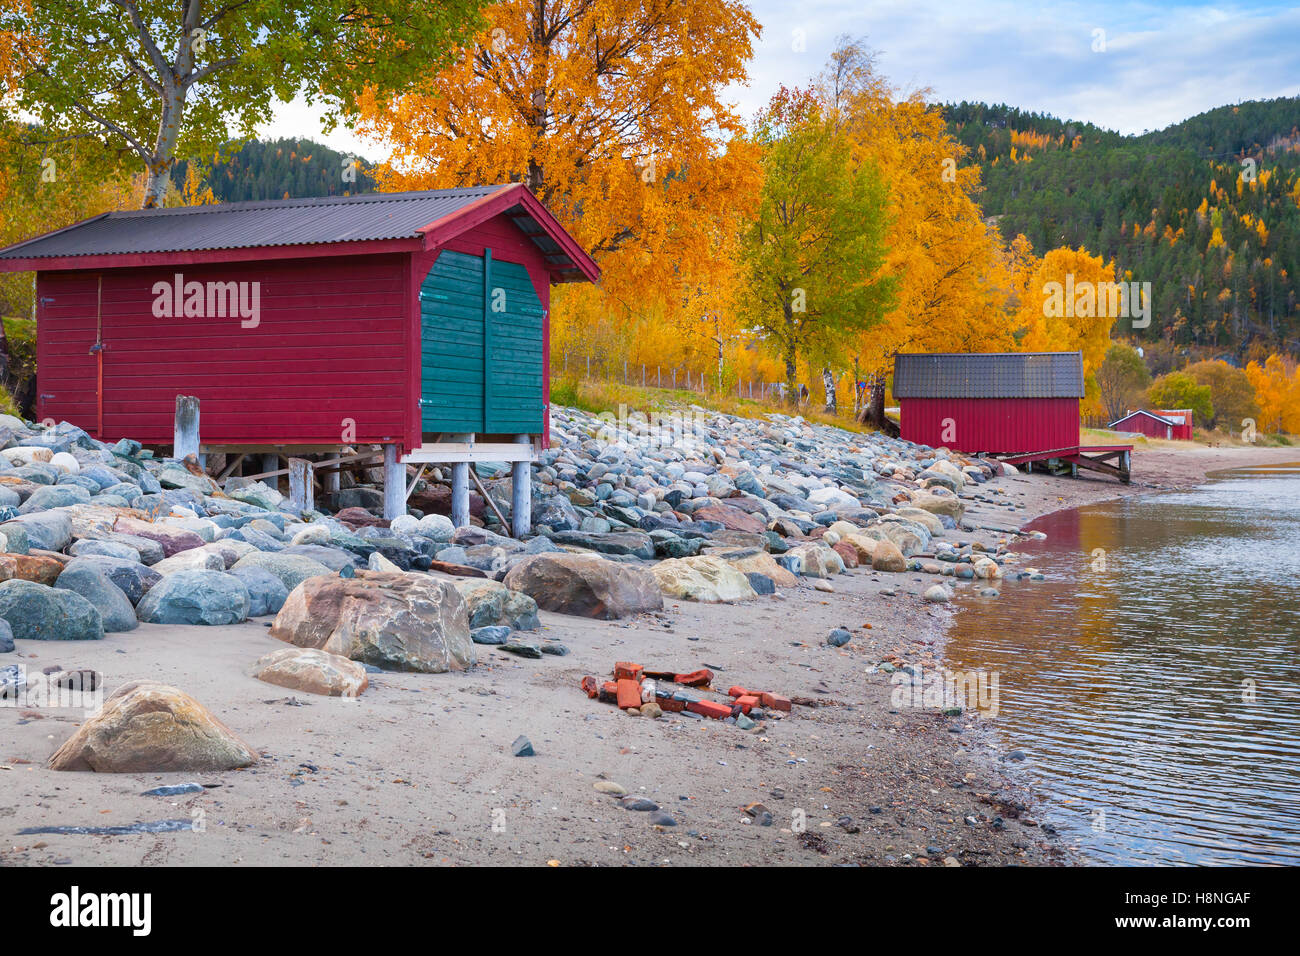 La côte de la mer de Norvège, paysage d'automne avec red granges de stockage pour les bateaux de pêche. Région de Trondheim Banque D'Images